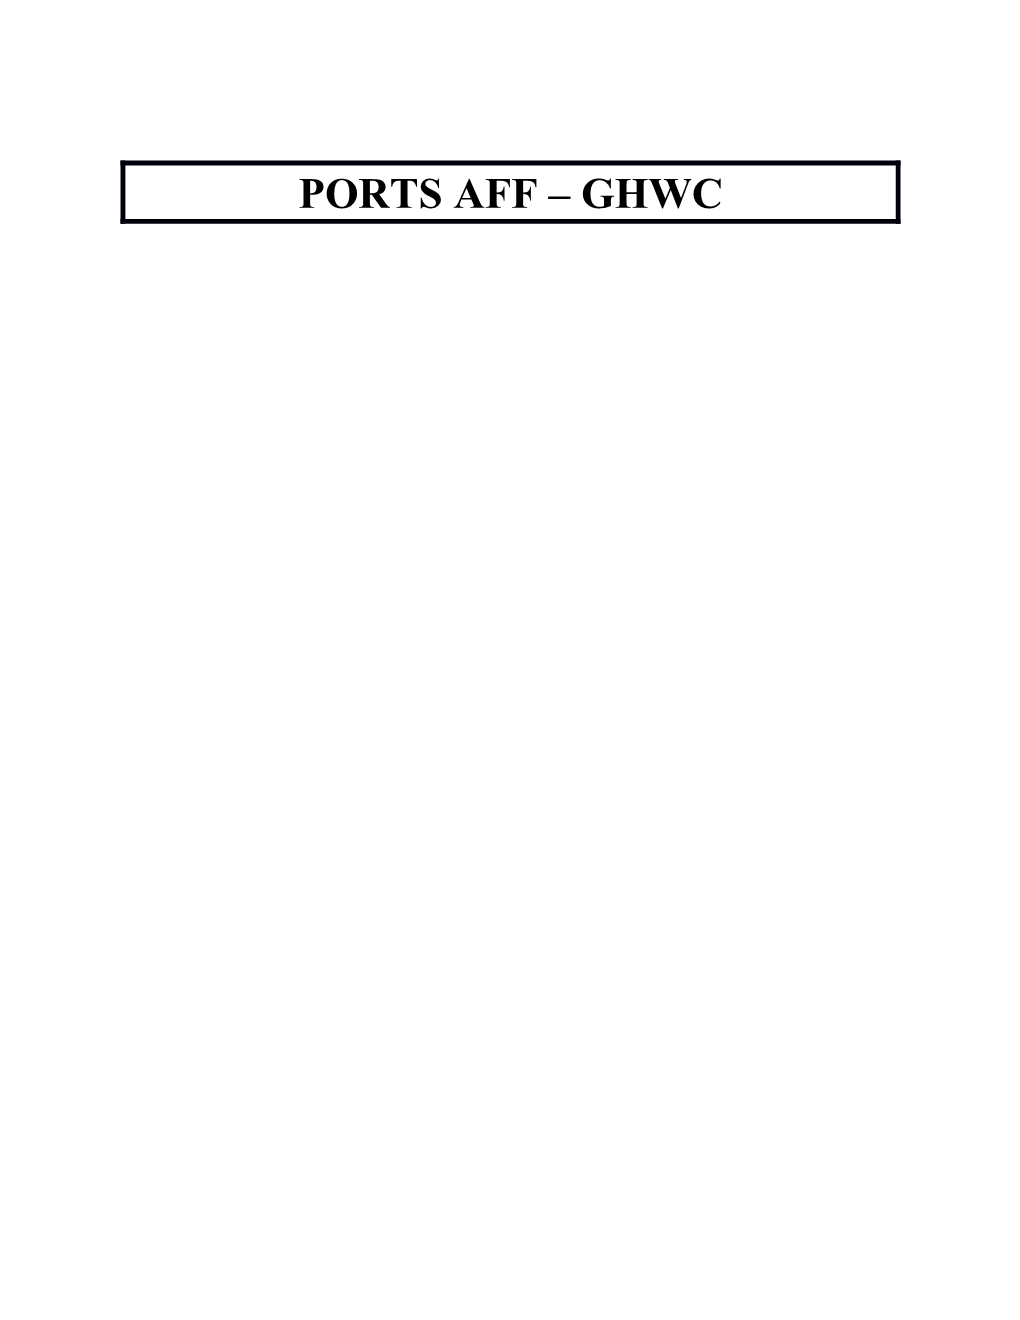 Ports Aff Ghwc